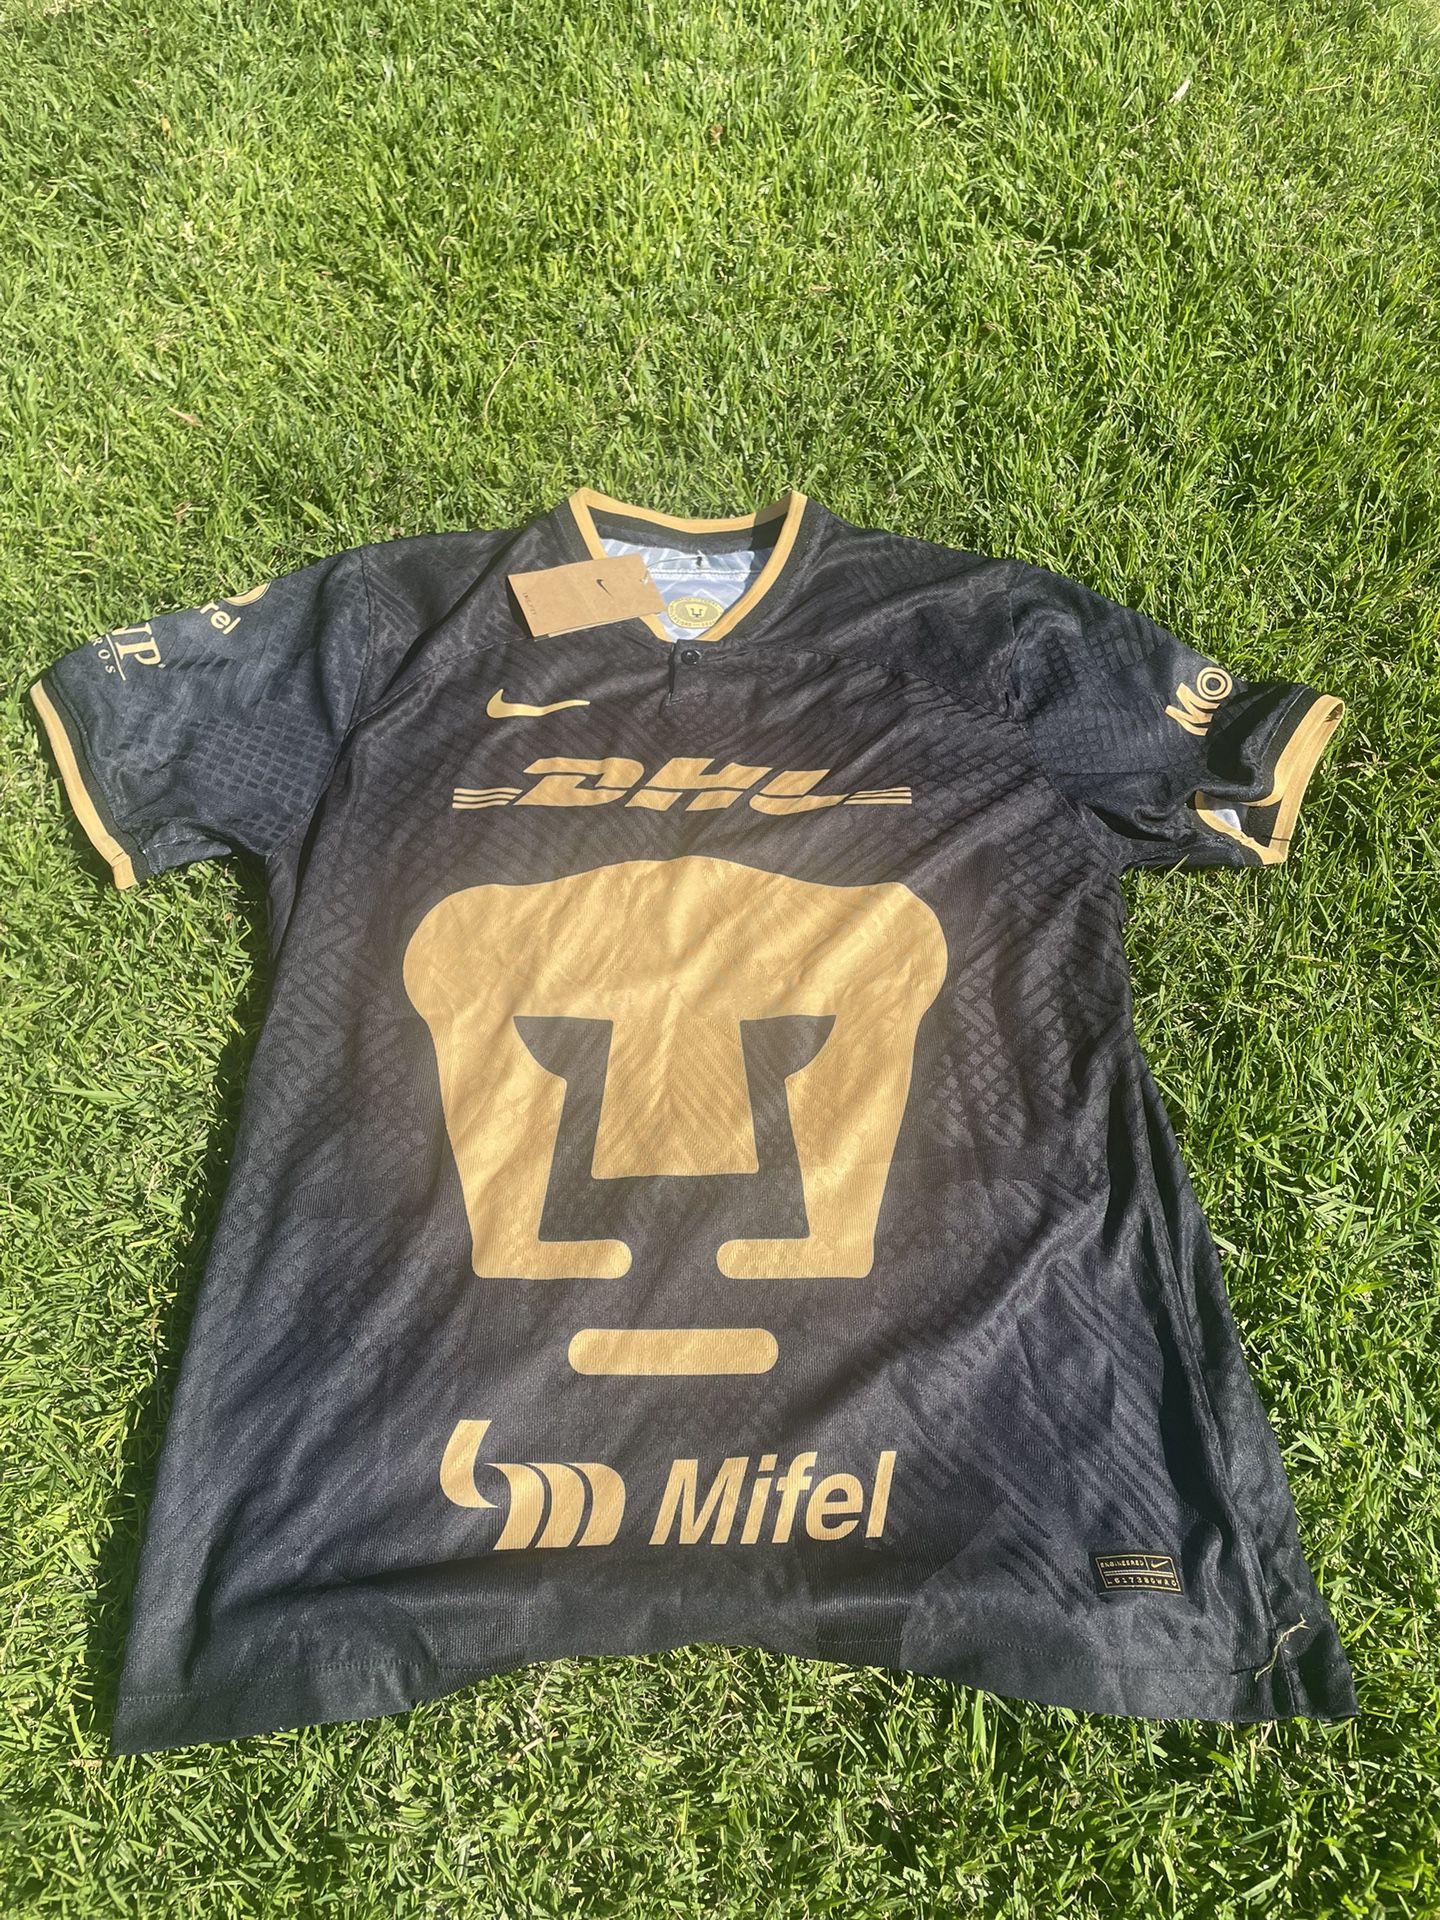 Pumas Unam jersey size XL player version /version jugador 